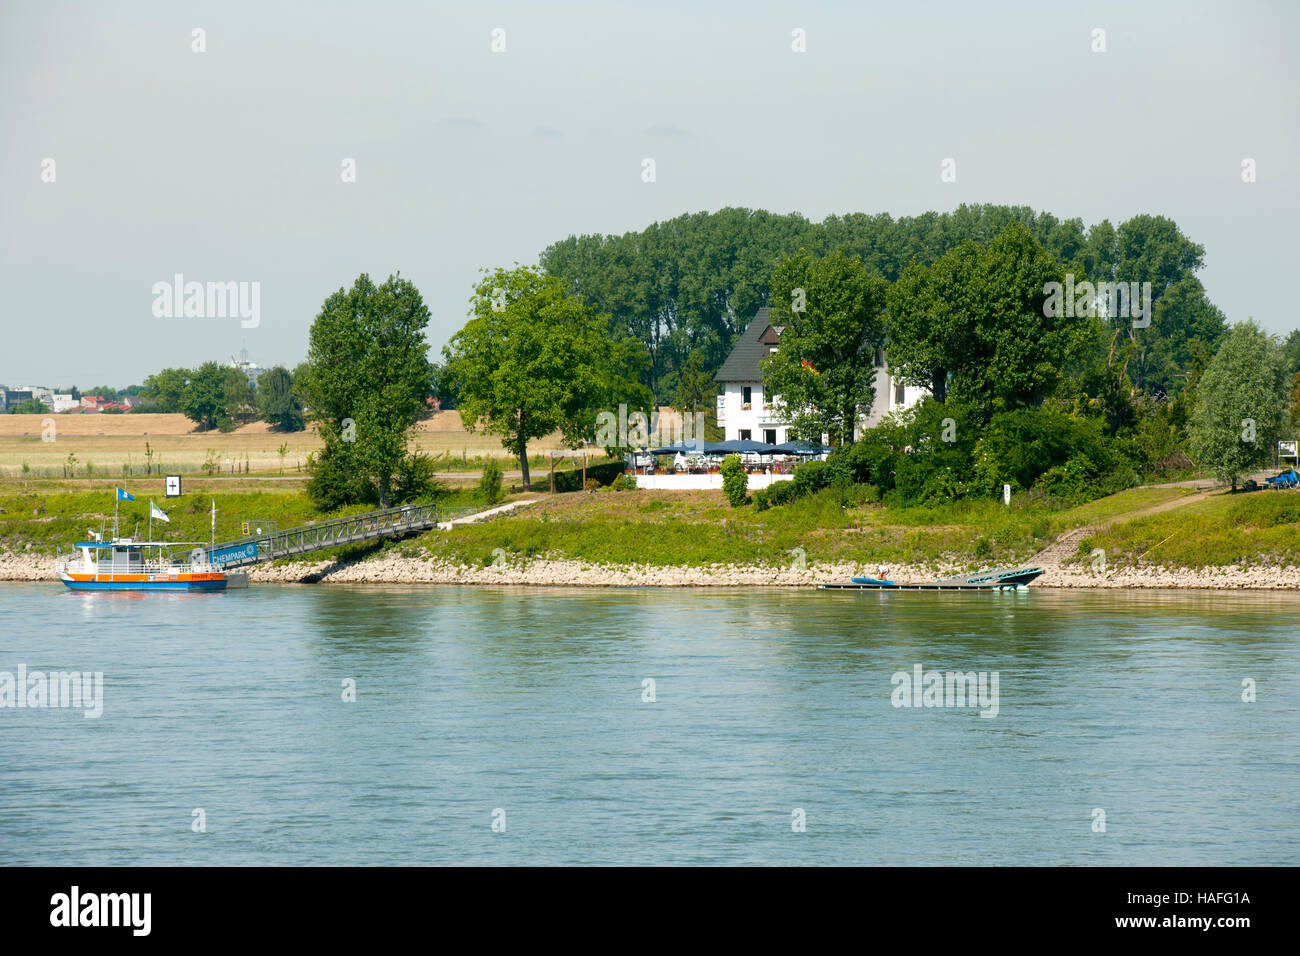 Deutschland, Monheim am Rhein, Blick über den Rhein zur Gaststätte 'An der Piwipp' Foto Stock